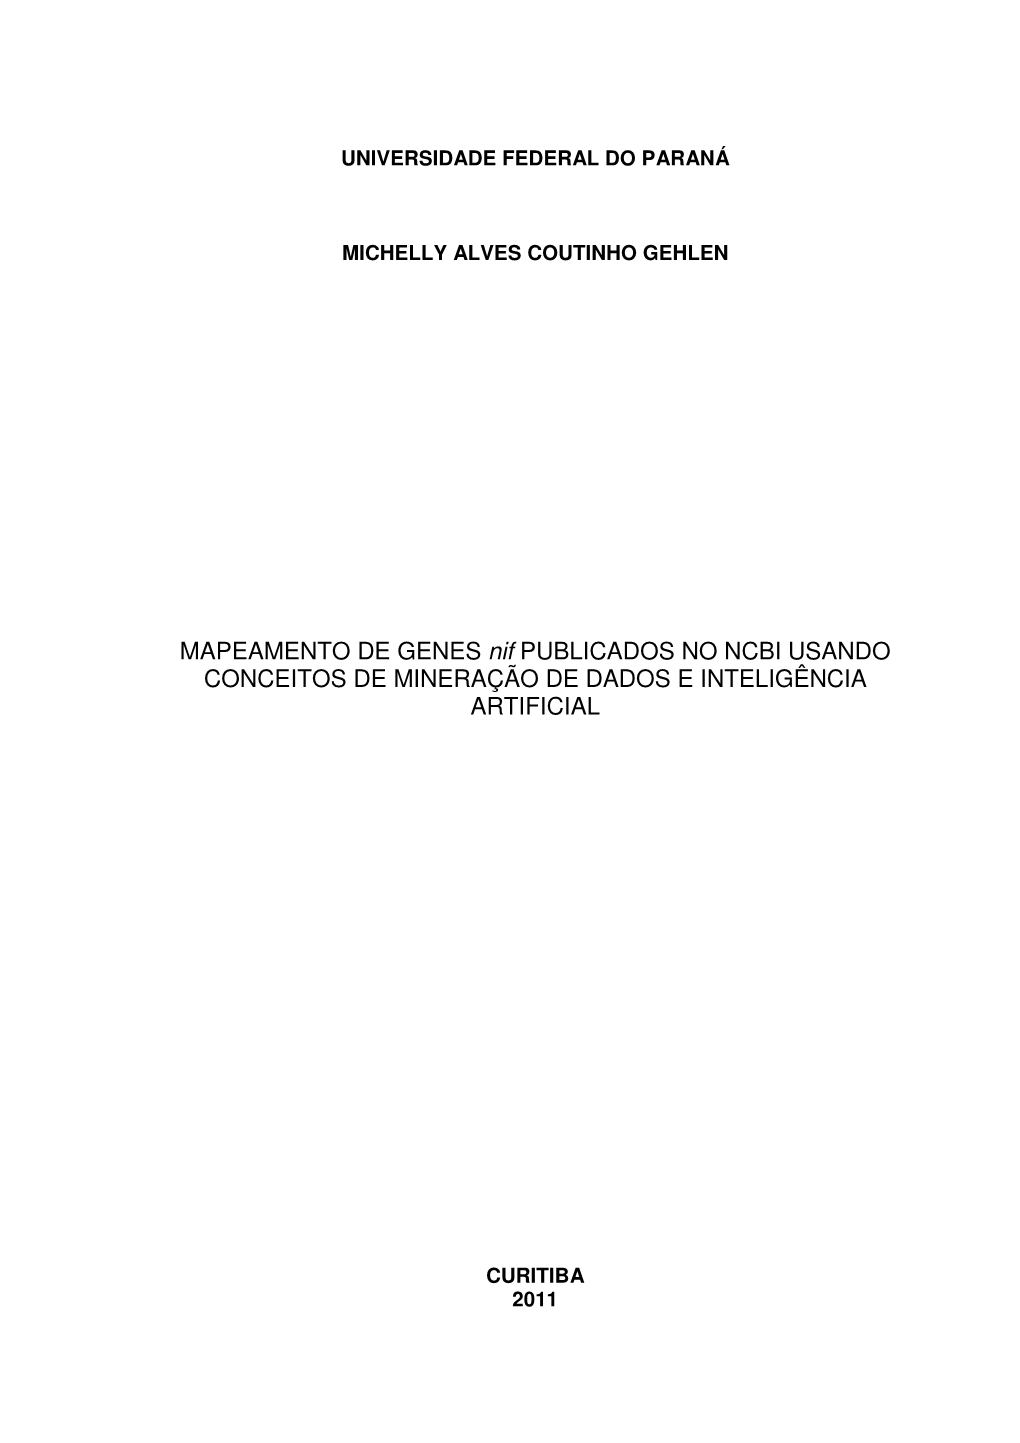 MAPEAMENTO DE GENES Nif PUBLICADOS NO NCBI USANDO CONCEITOS DE MINERAÇÃO DE DADOS E INTELIGÊNCIA ARTIFICIAL